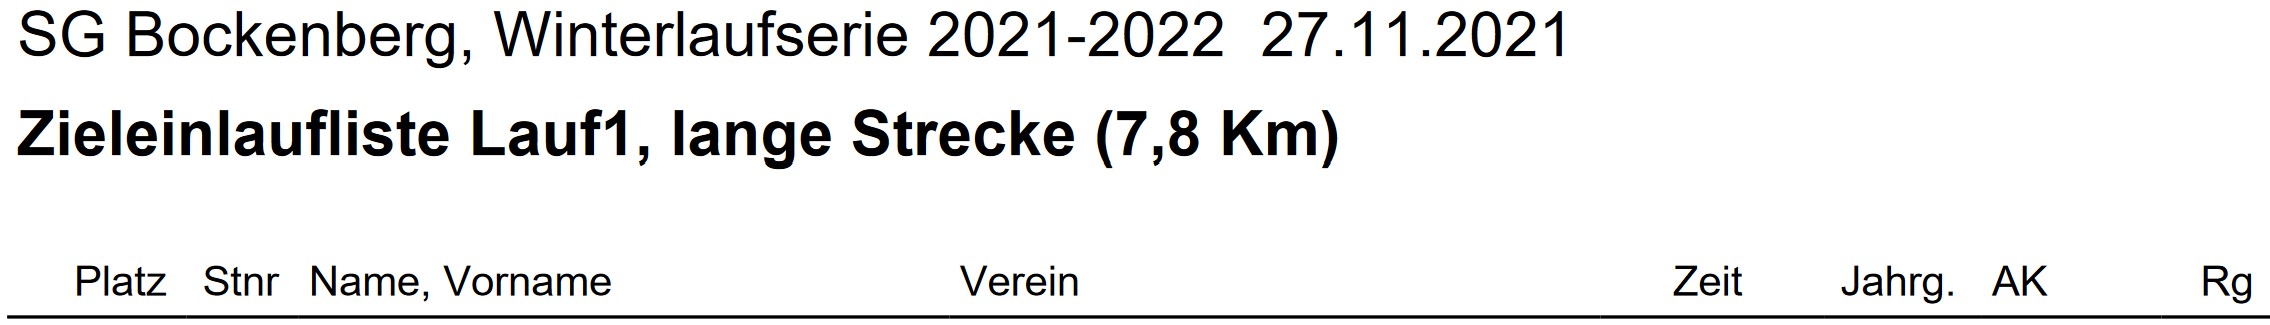 Bockenberg 2021 Lauf1 Ergebnis Teil1